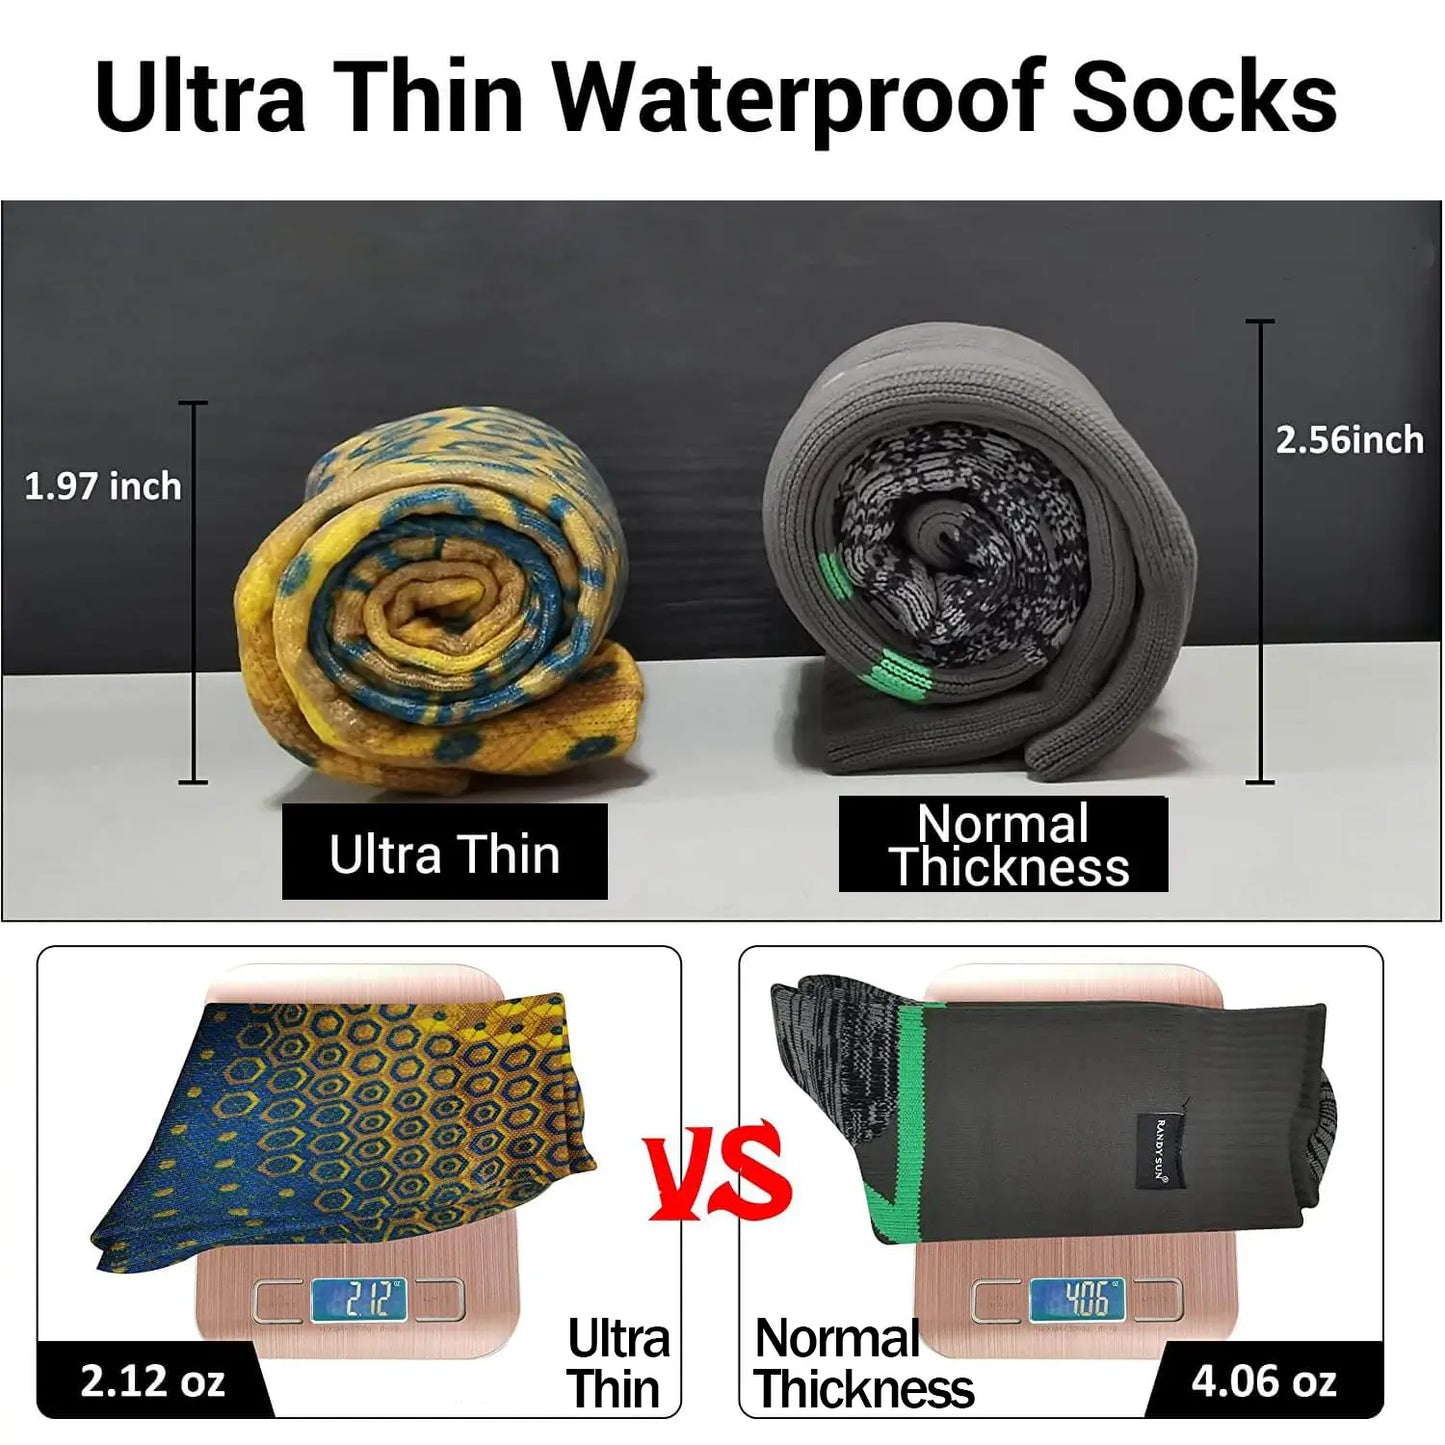 2.12oz waterproof socks